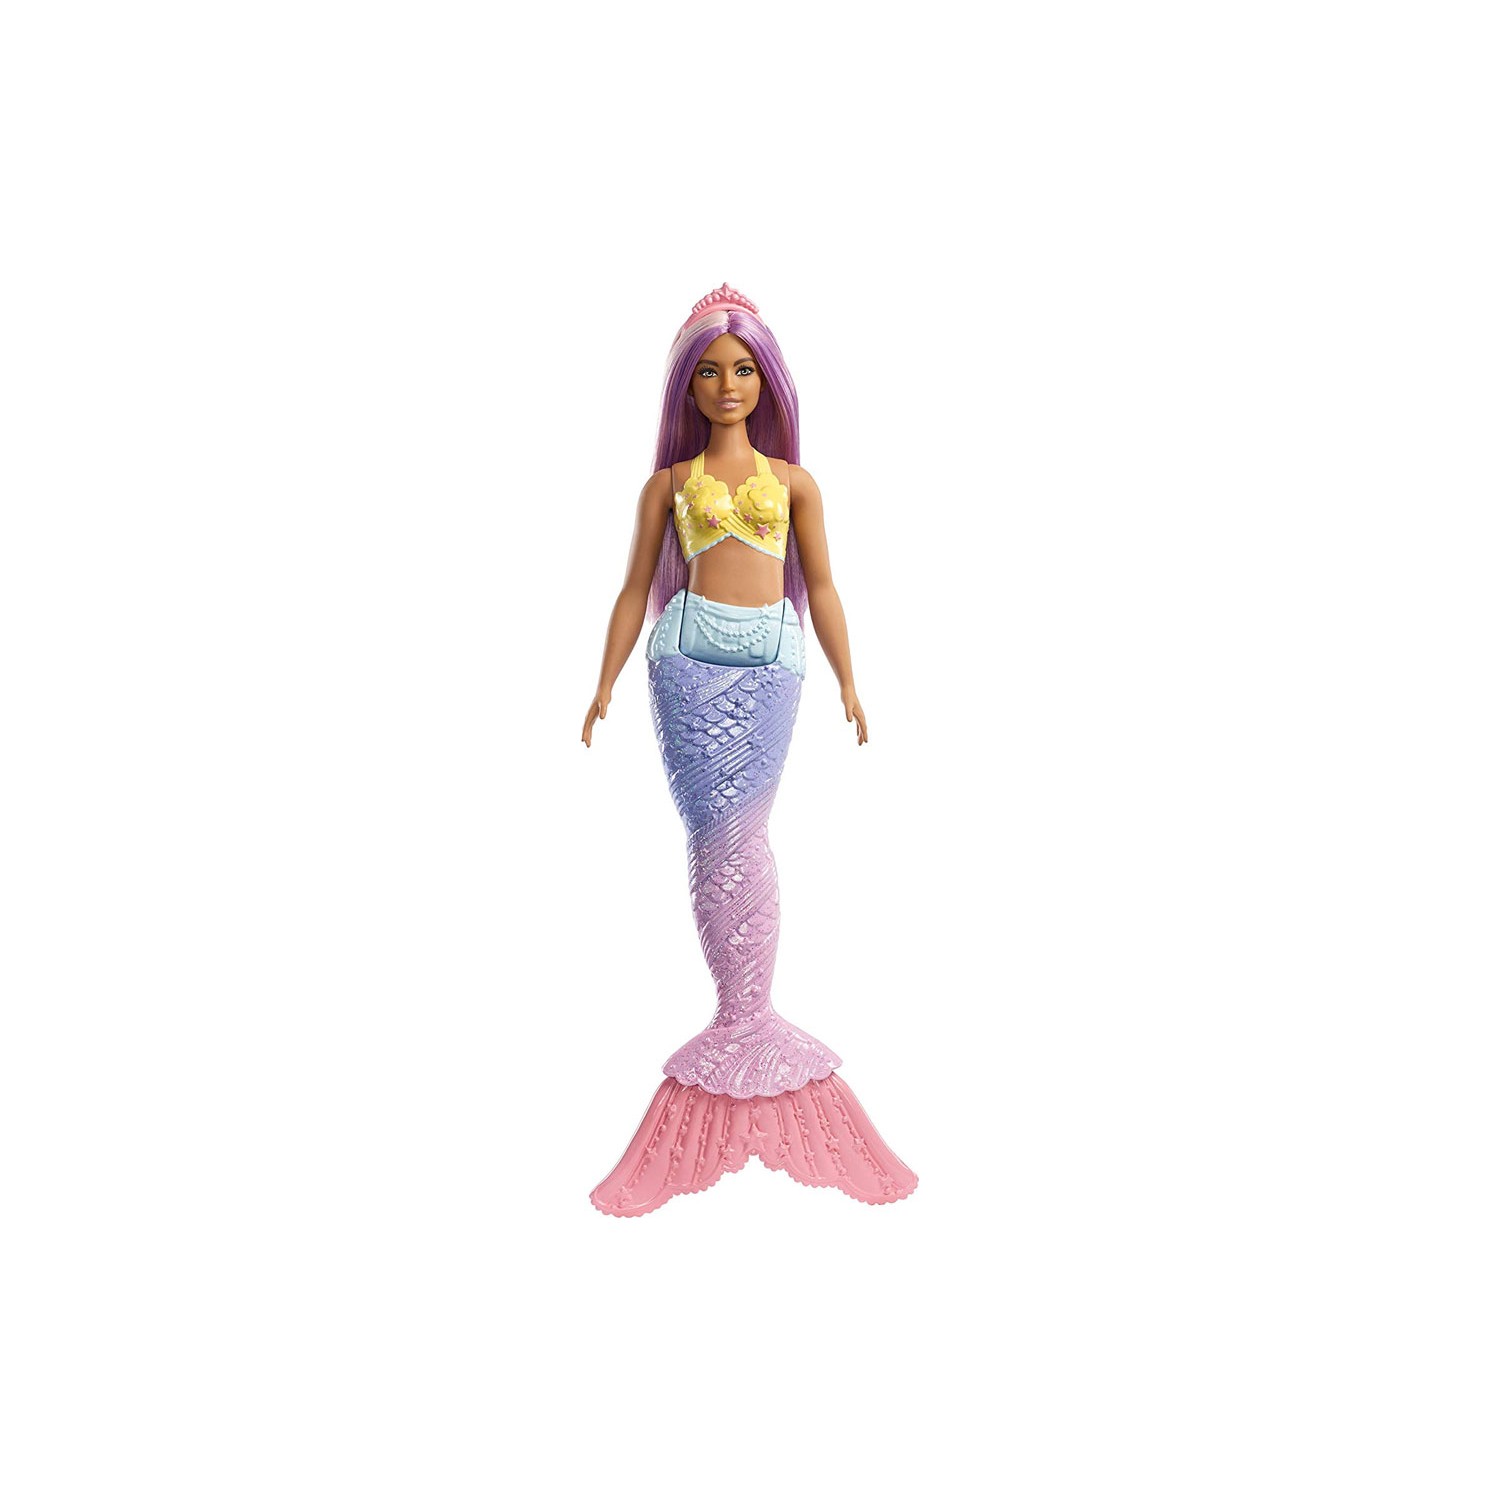 Куклы Barbie Dreamtopia Mermaid FXT08 barbie кукла barbie dreamtopia с высотой 29 см принцесса с длинными волосами в радужном платье и аксессуары gtf38